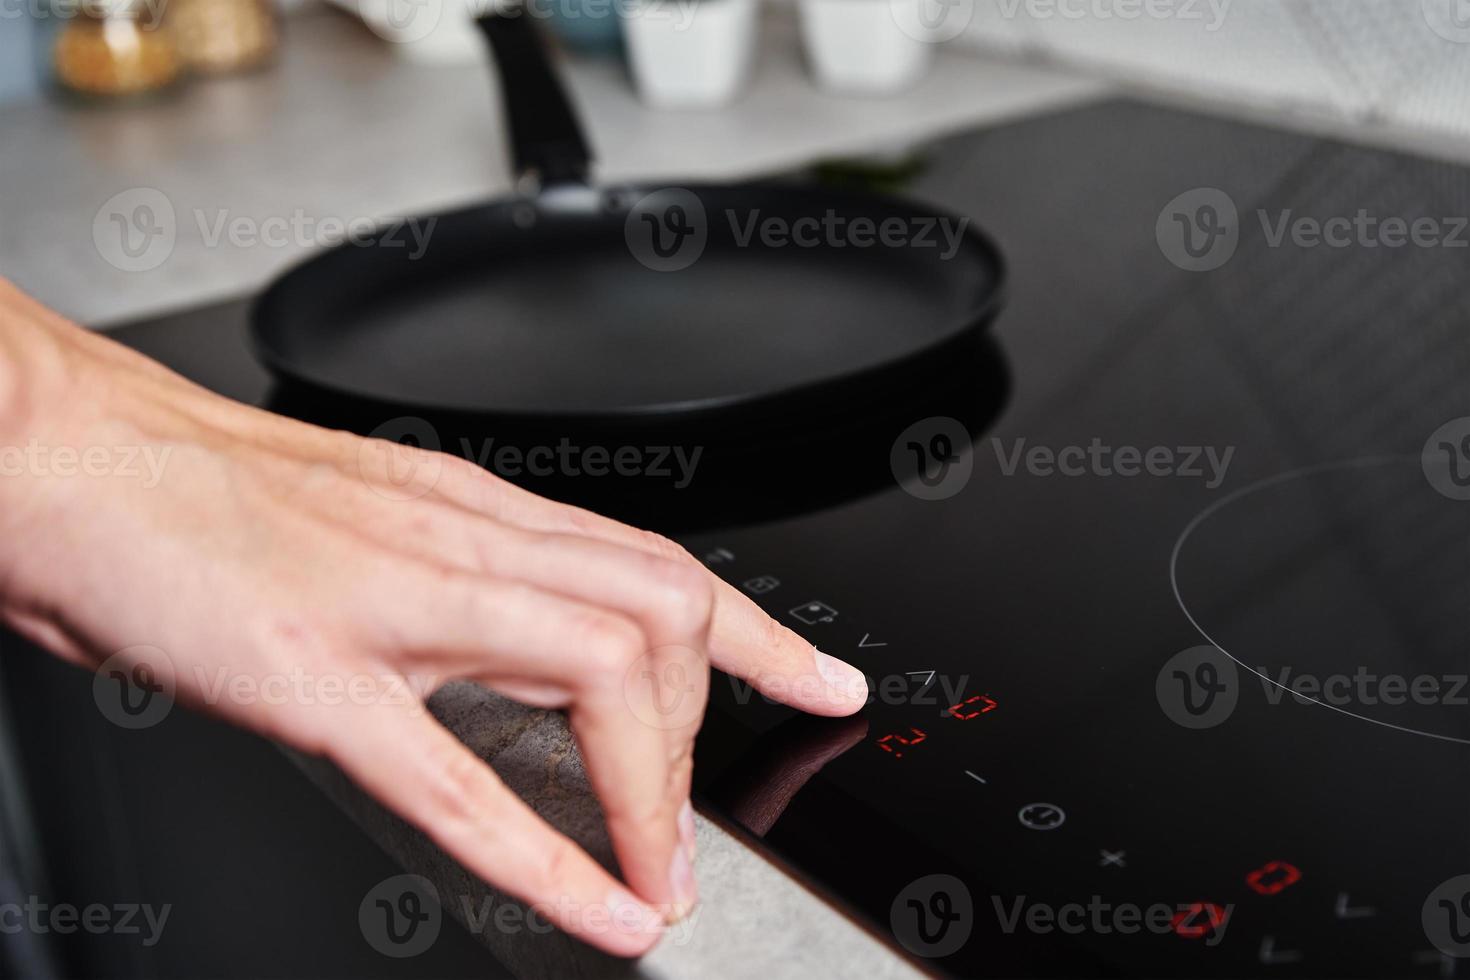 Frauenhand schaltet modernen Induktionsherd in der Küche ein foto